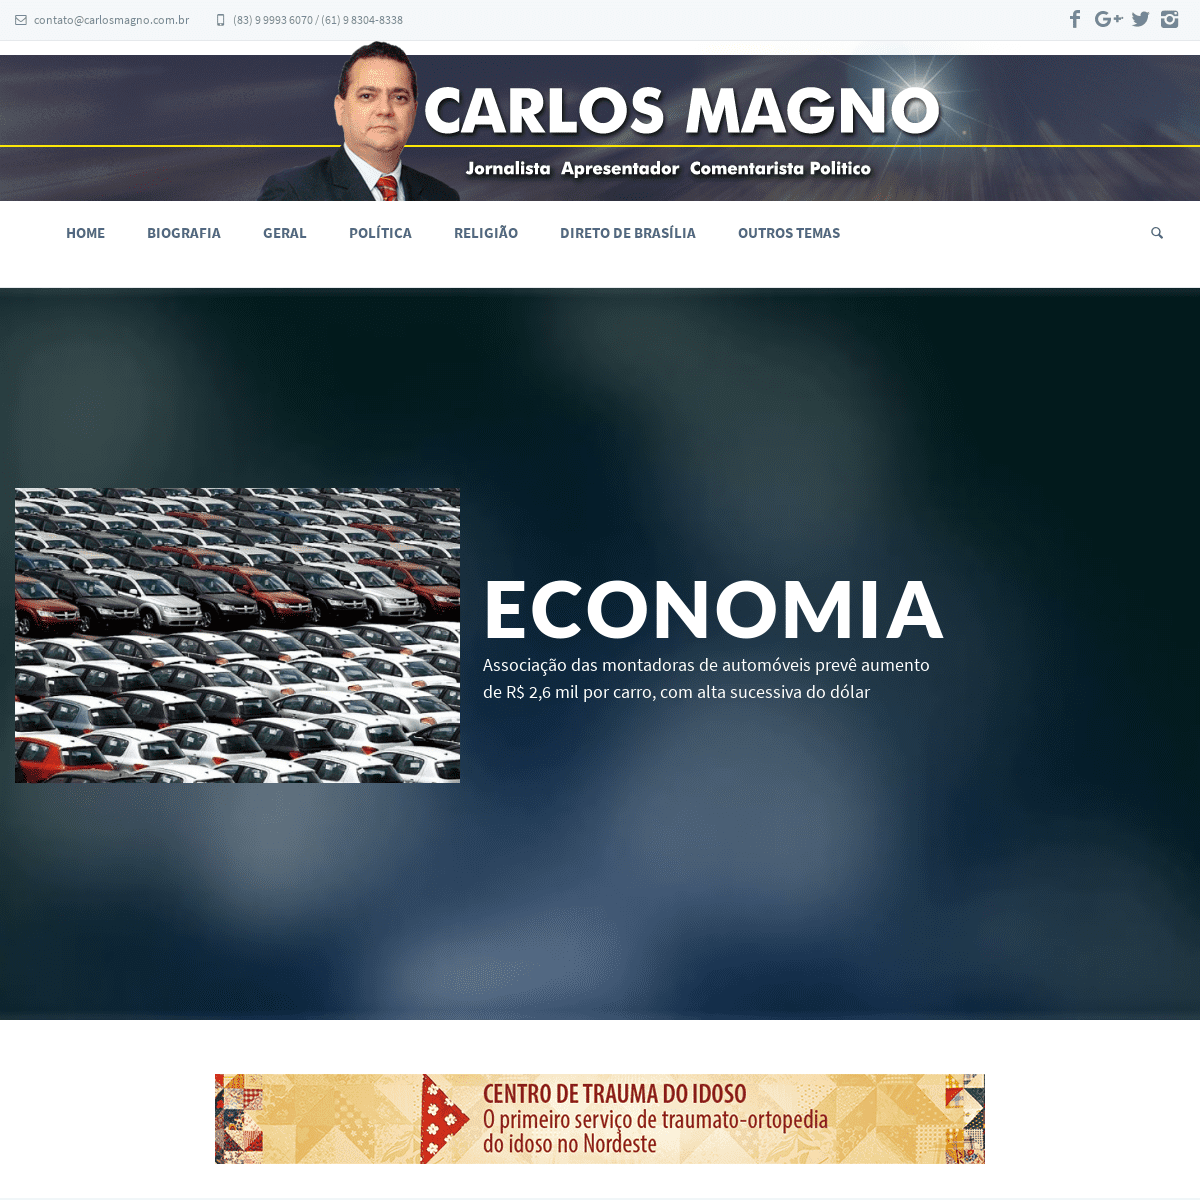 A complete backup of carlosmagno.com.br